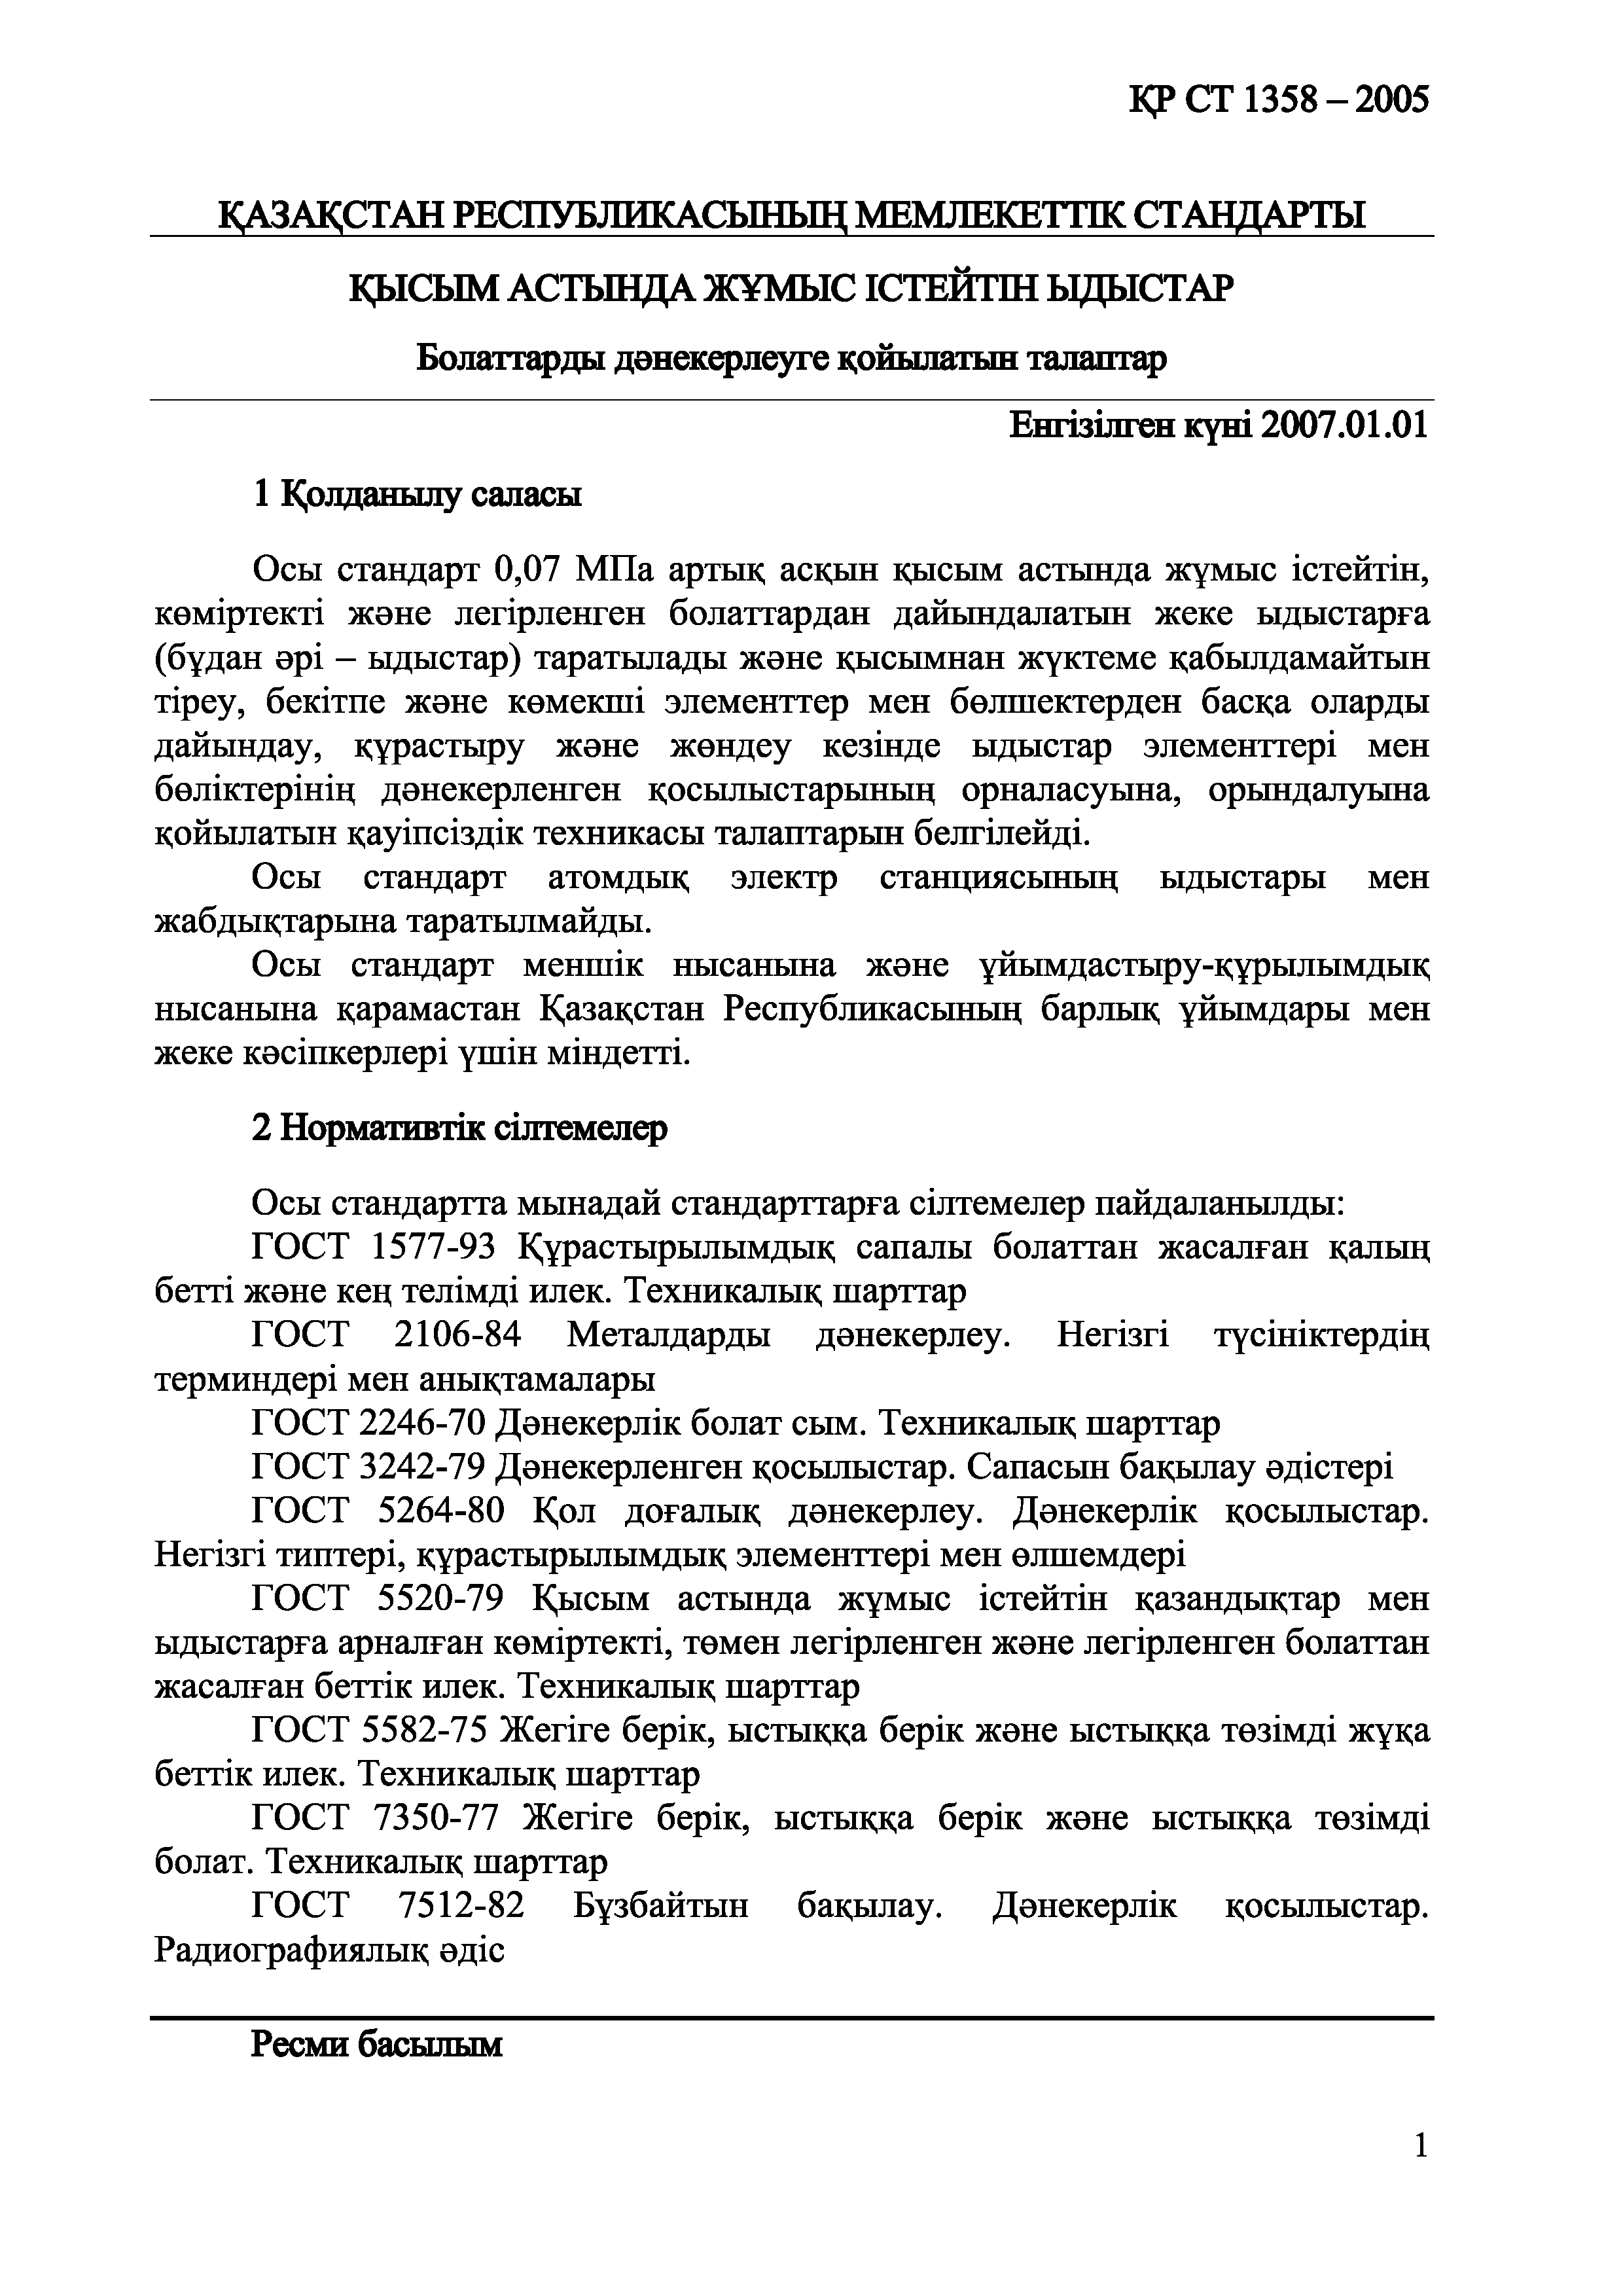 СТ РК 1358-2005